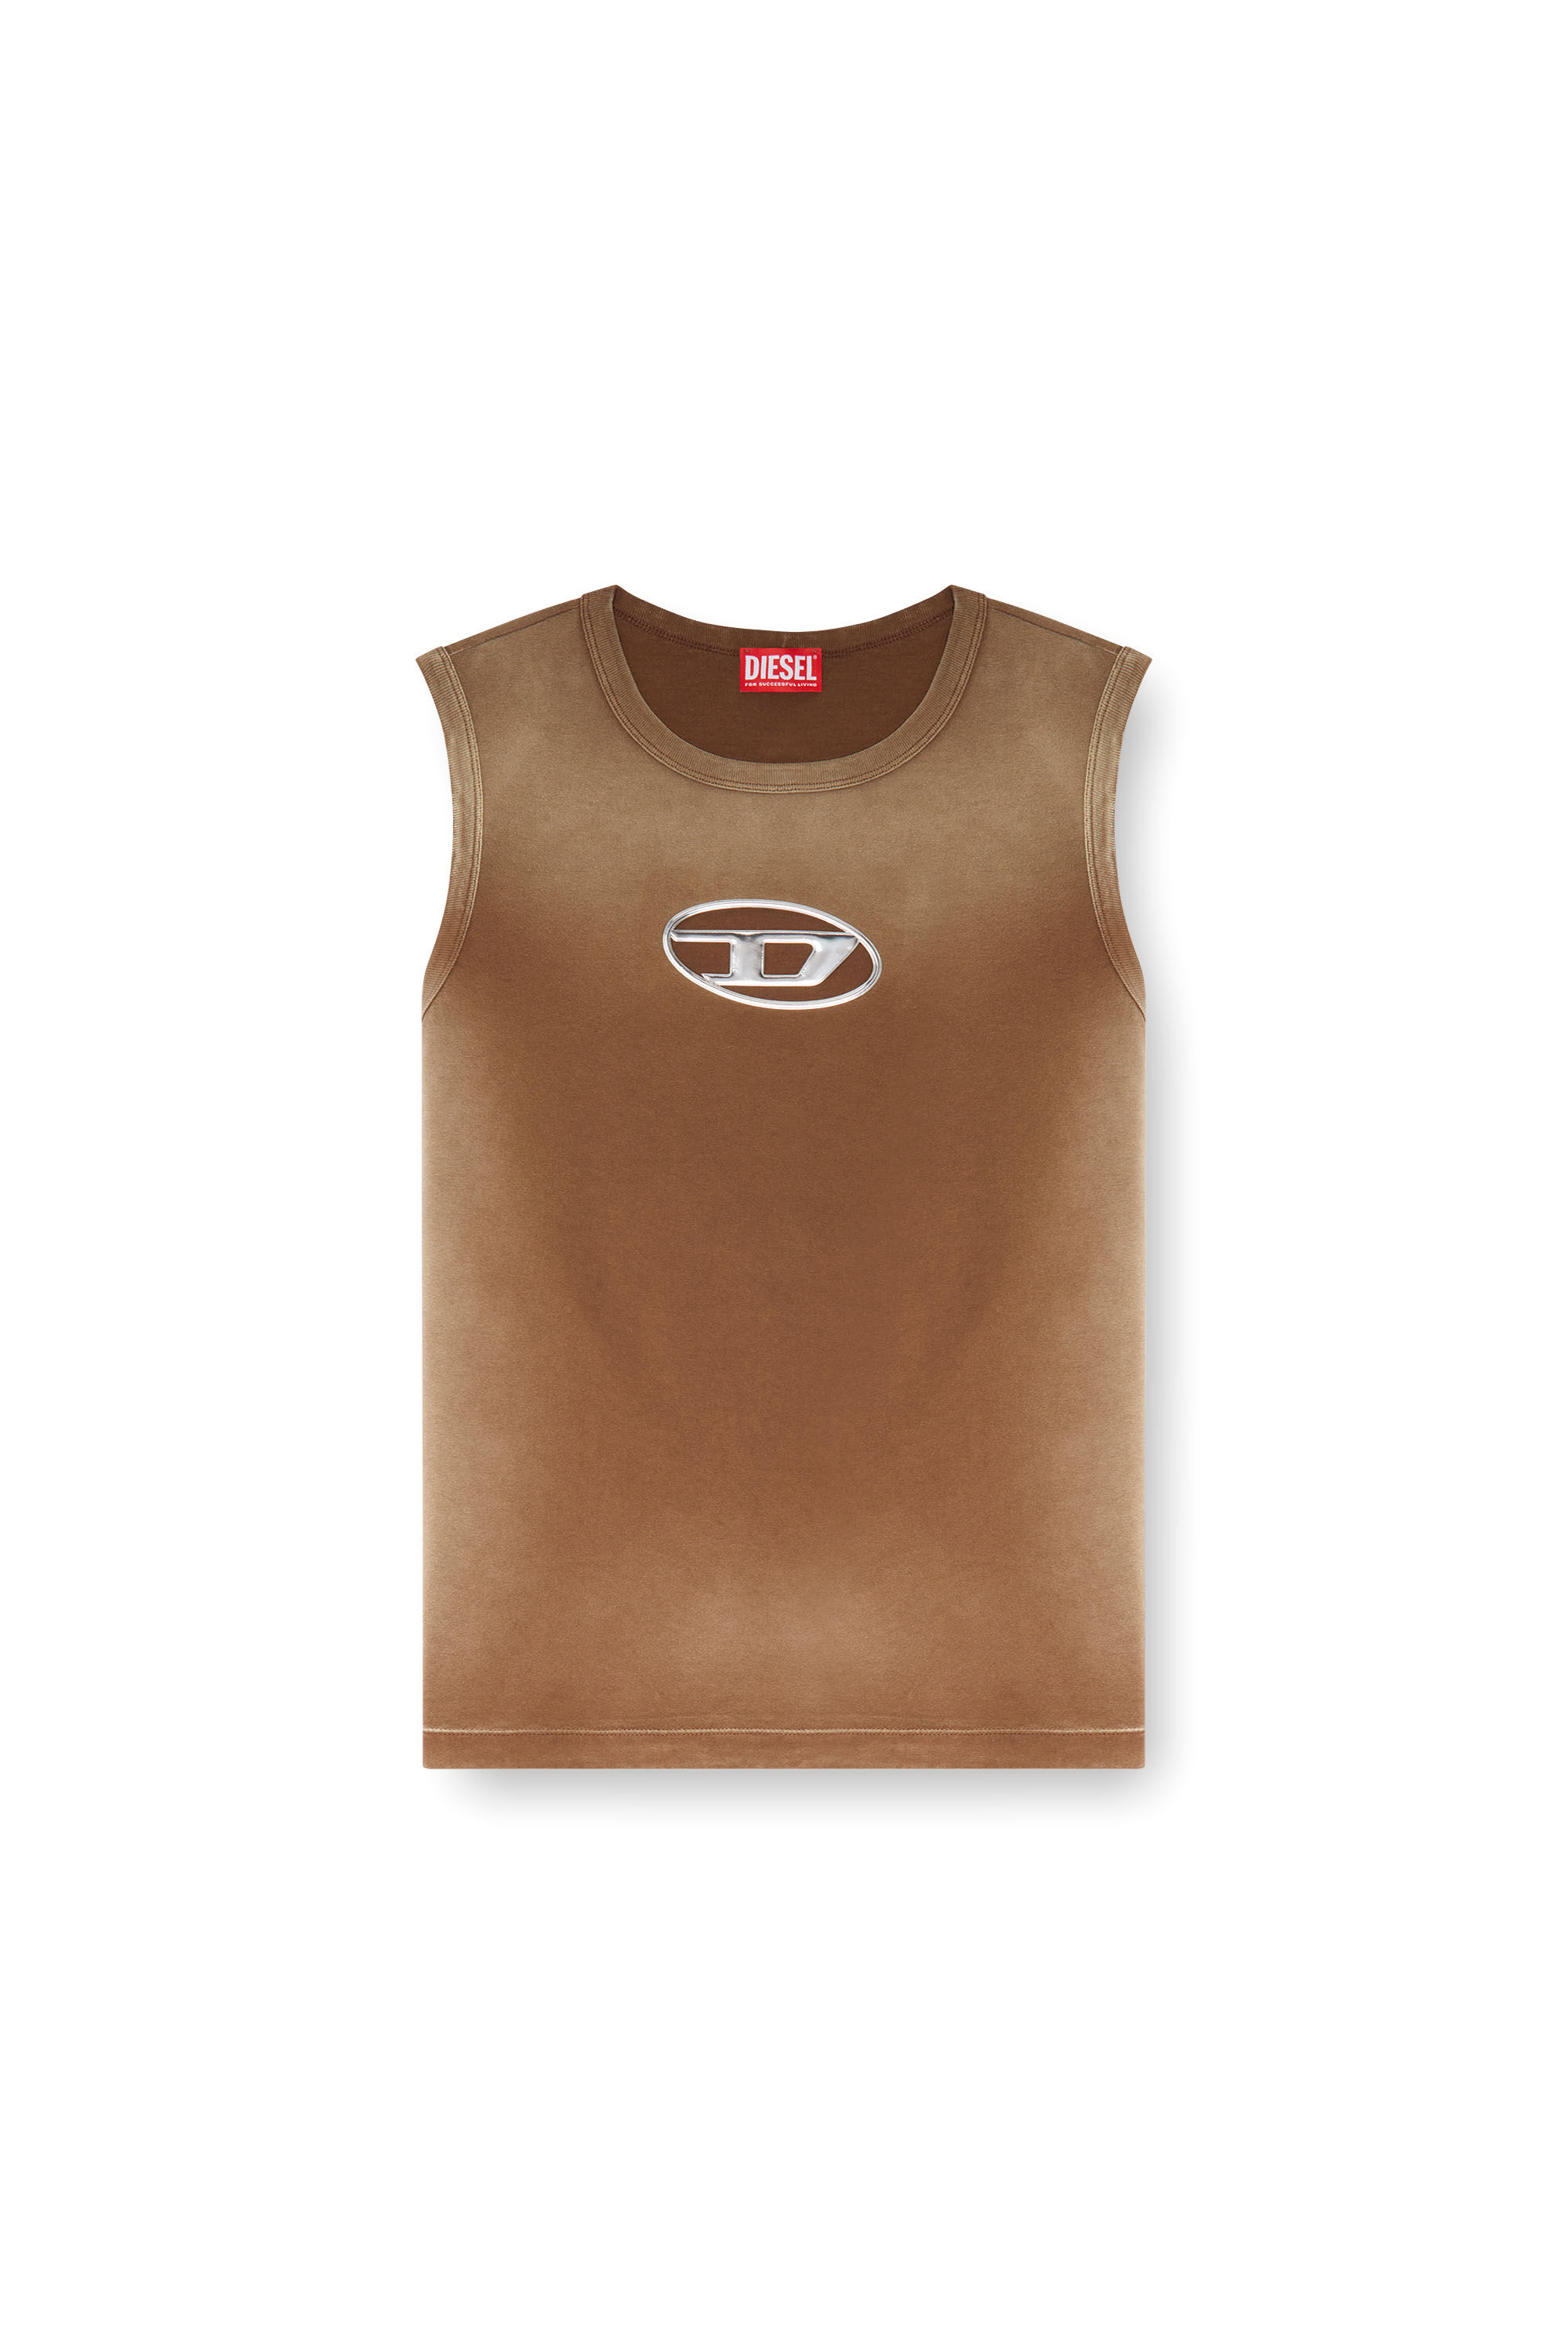 Diesel - T-BRICO, Hombre Camiseta sin mangas desteñida con Oval D en relieve in Marrón - Image 2